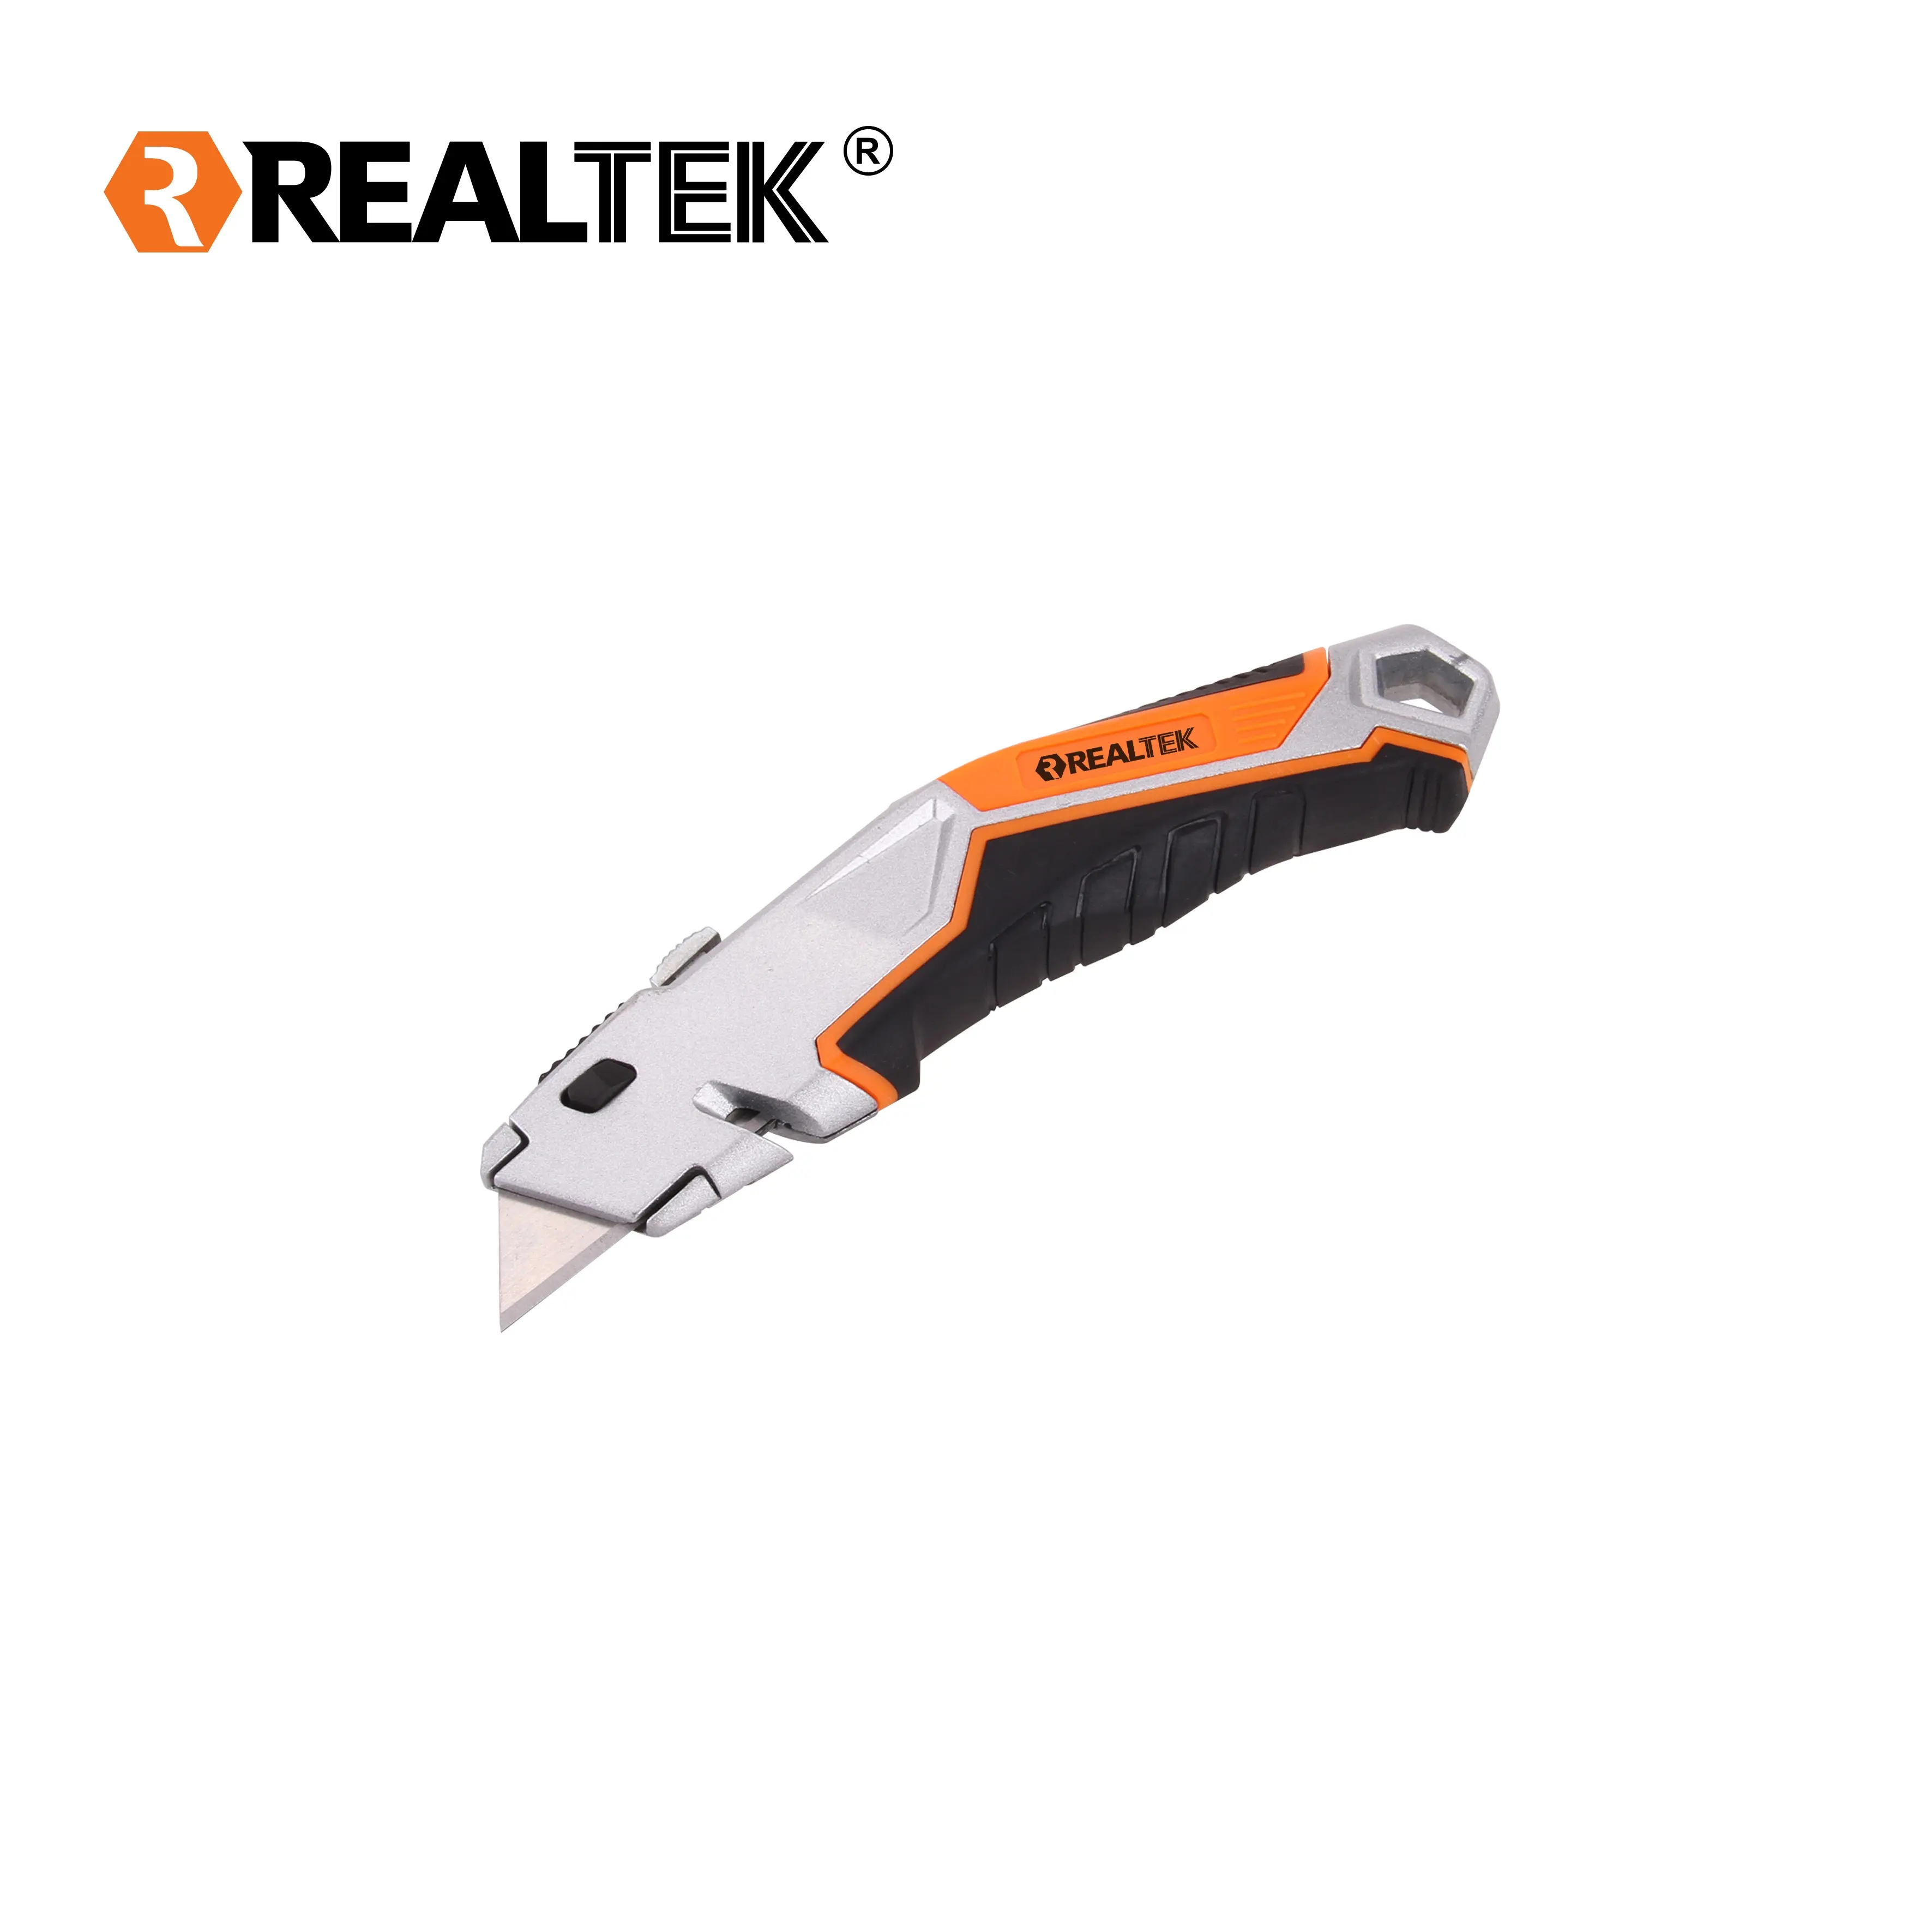 Realtek TPR 핸들 블레이드 스토리지 디자인 퀵 체인지 블레이드 개폐식 박스 커터 유틸리티 나이프